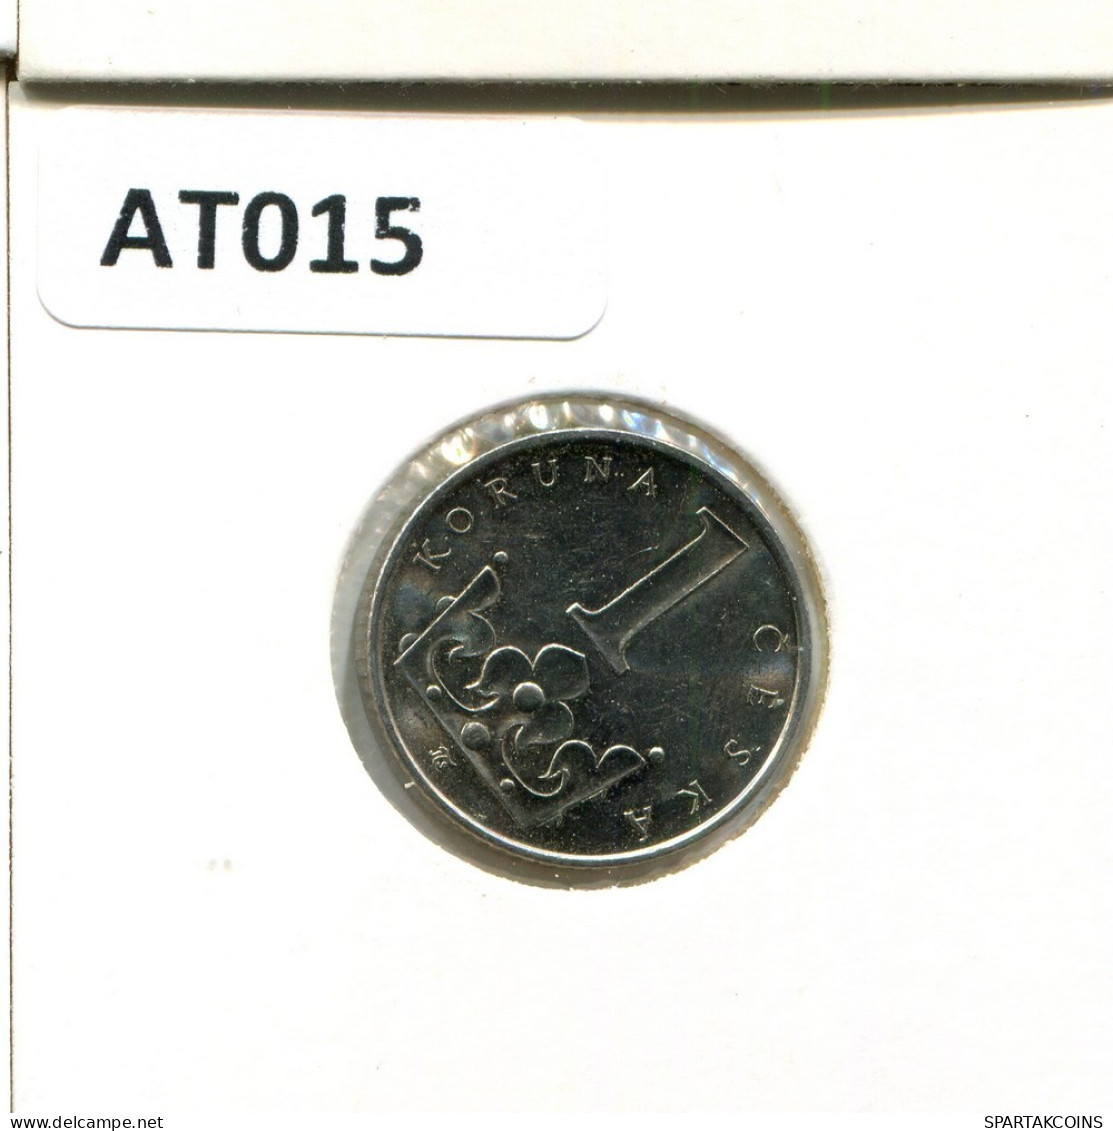 1 KORUNA 2000 CZECH REPUBLIC Coin #AT015.U.A - Repubblica Ceca